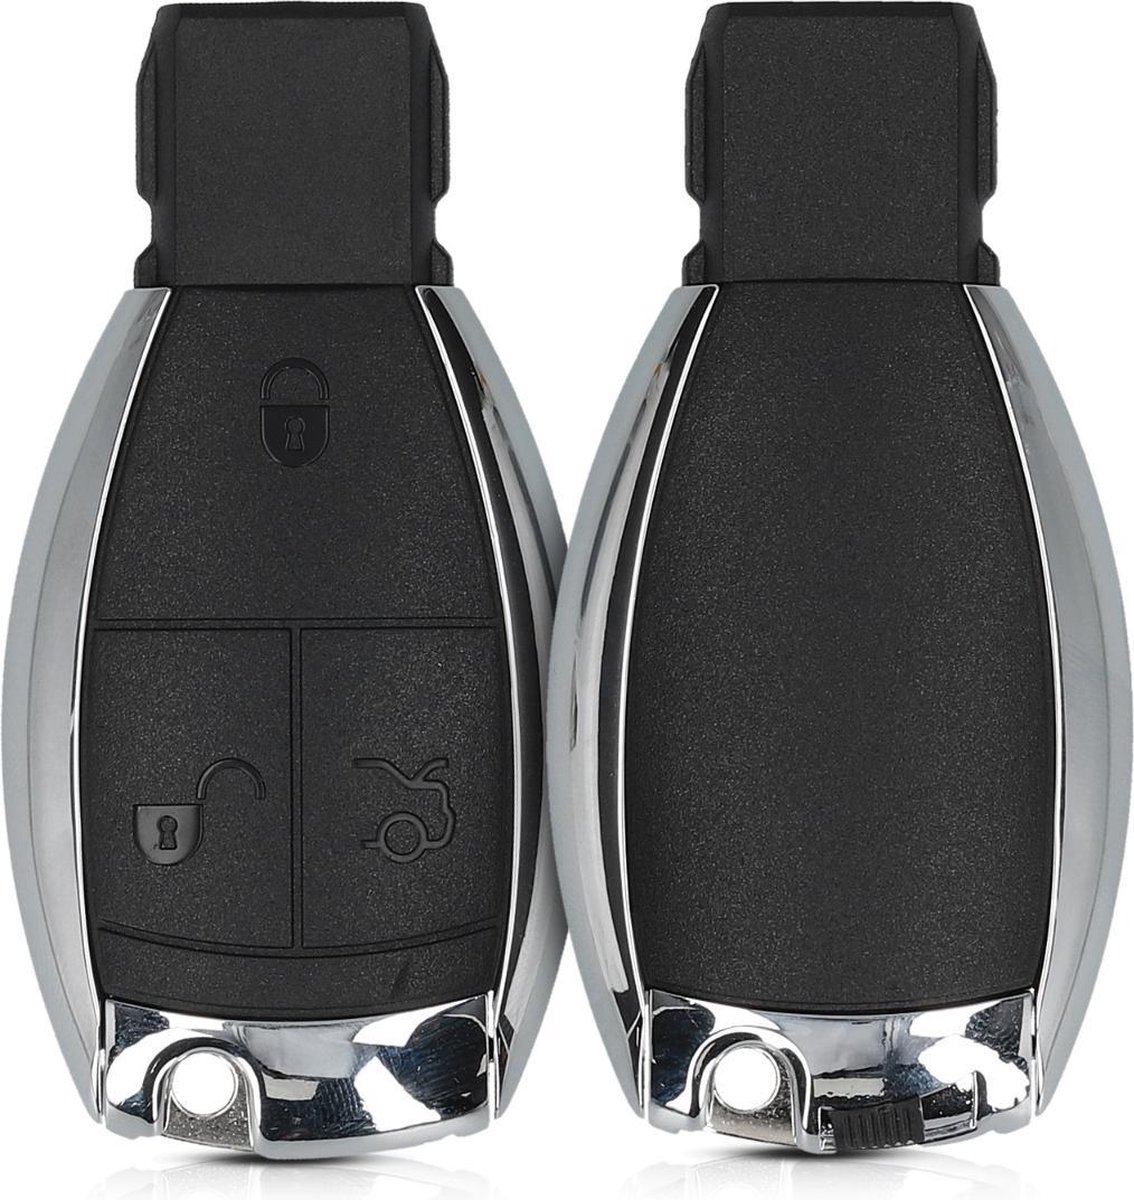 kwmobile autosleutelcover geschikt voor Mercedes Benz 3-knops autosleutel - vervangende sleutelbehuizing - zonder transponder - zwart